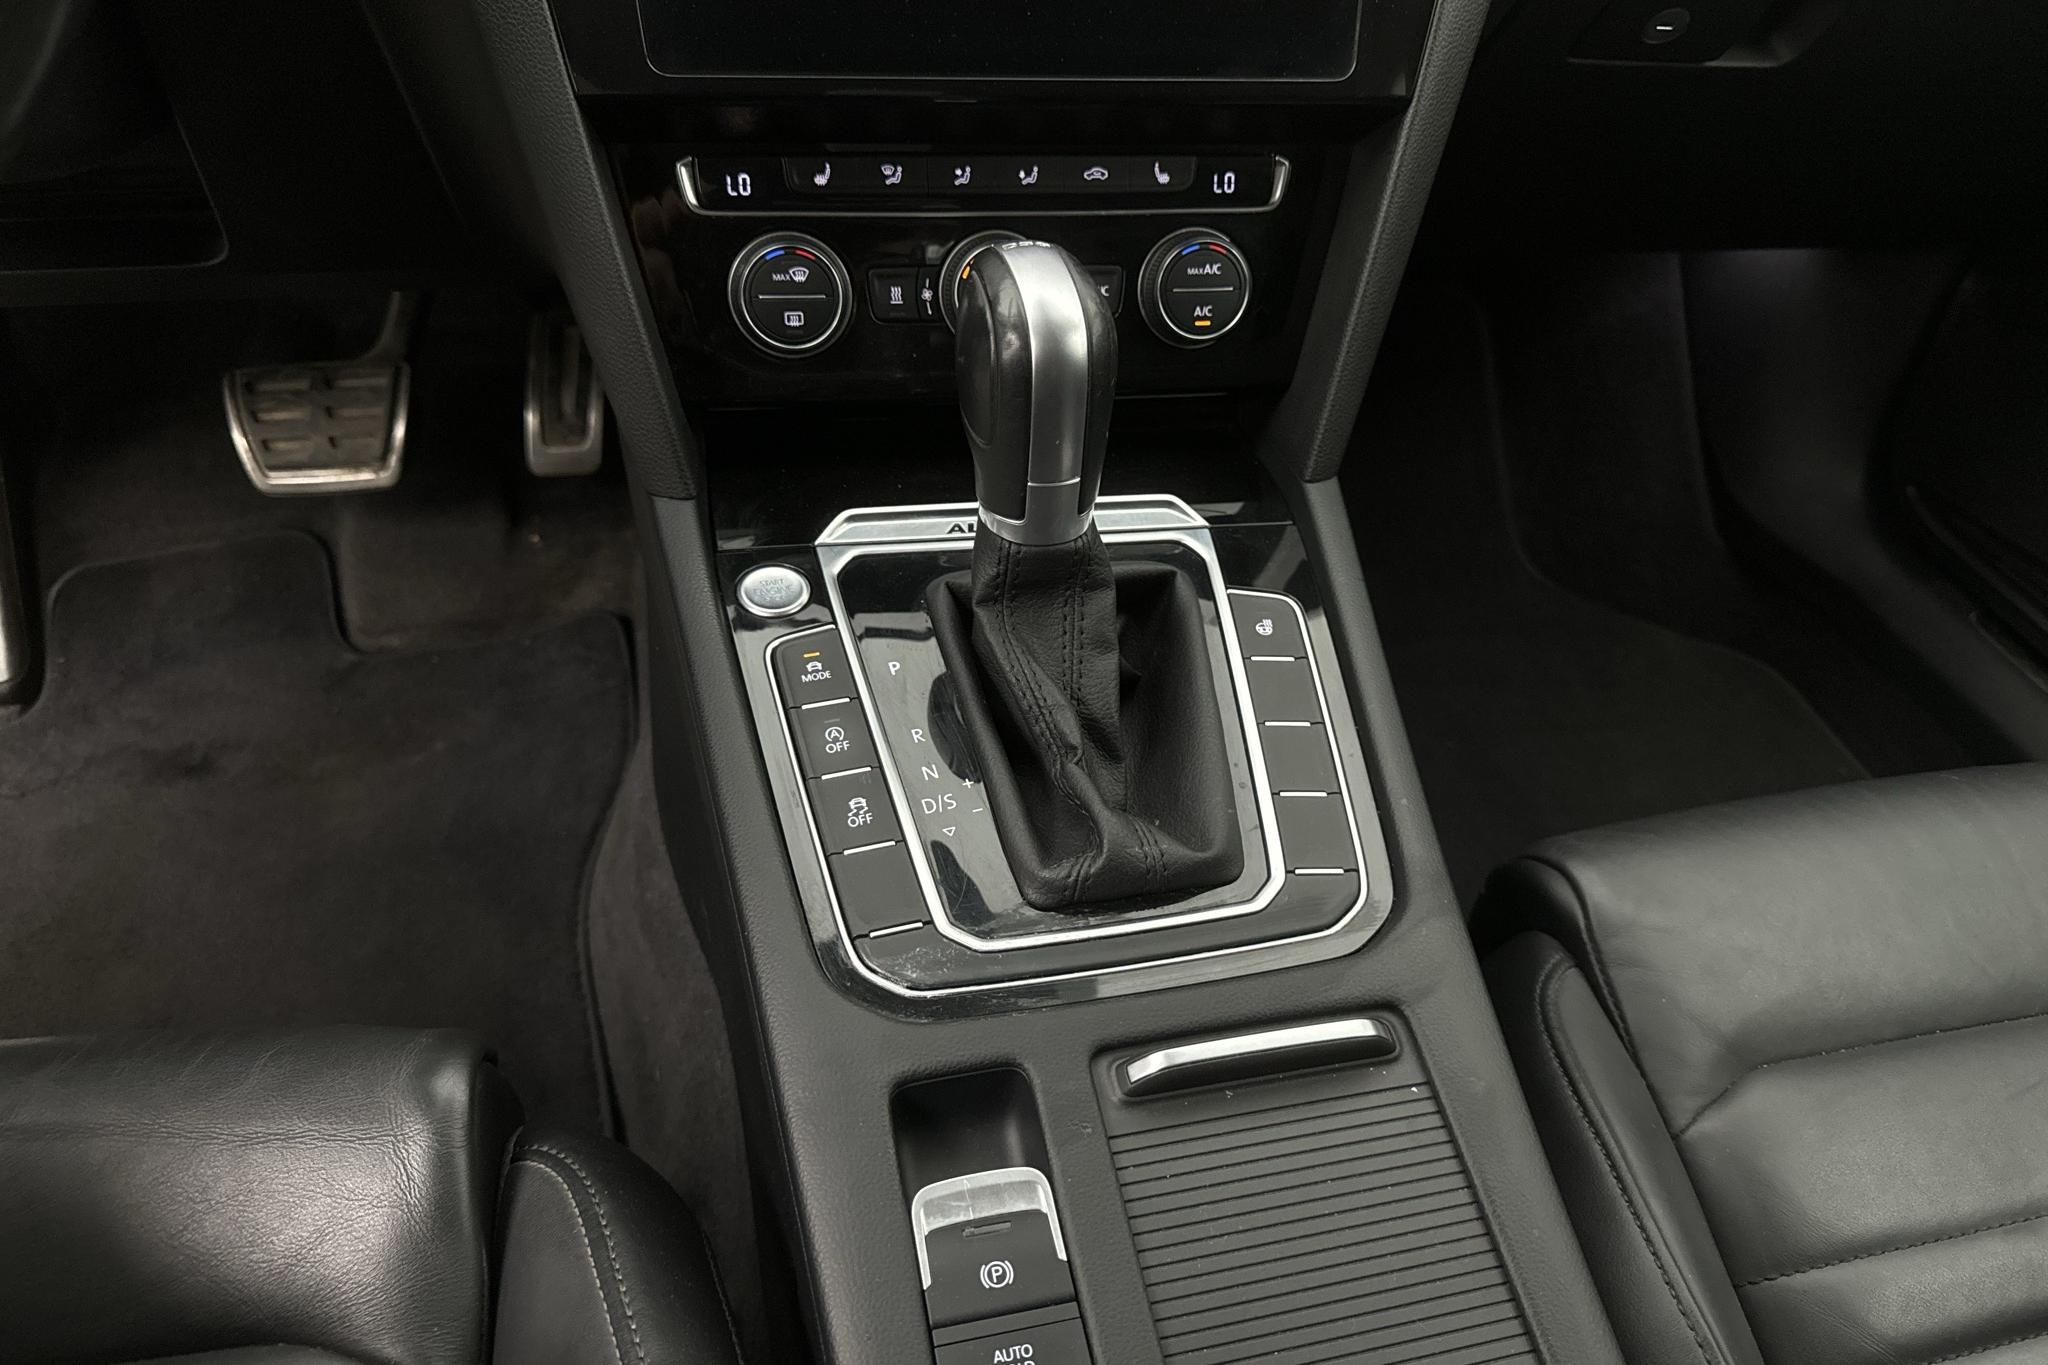 VW Passat Alltrack 2.0 TDI 4MOTION (190hk) - 249 040 km - Automatyczna - czarny - 2018